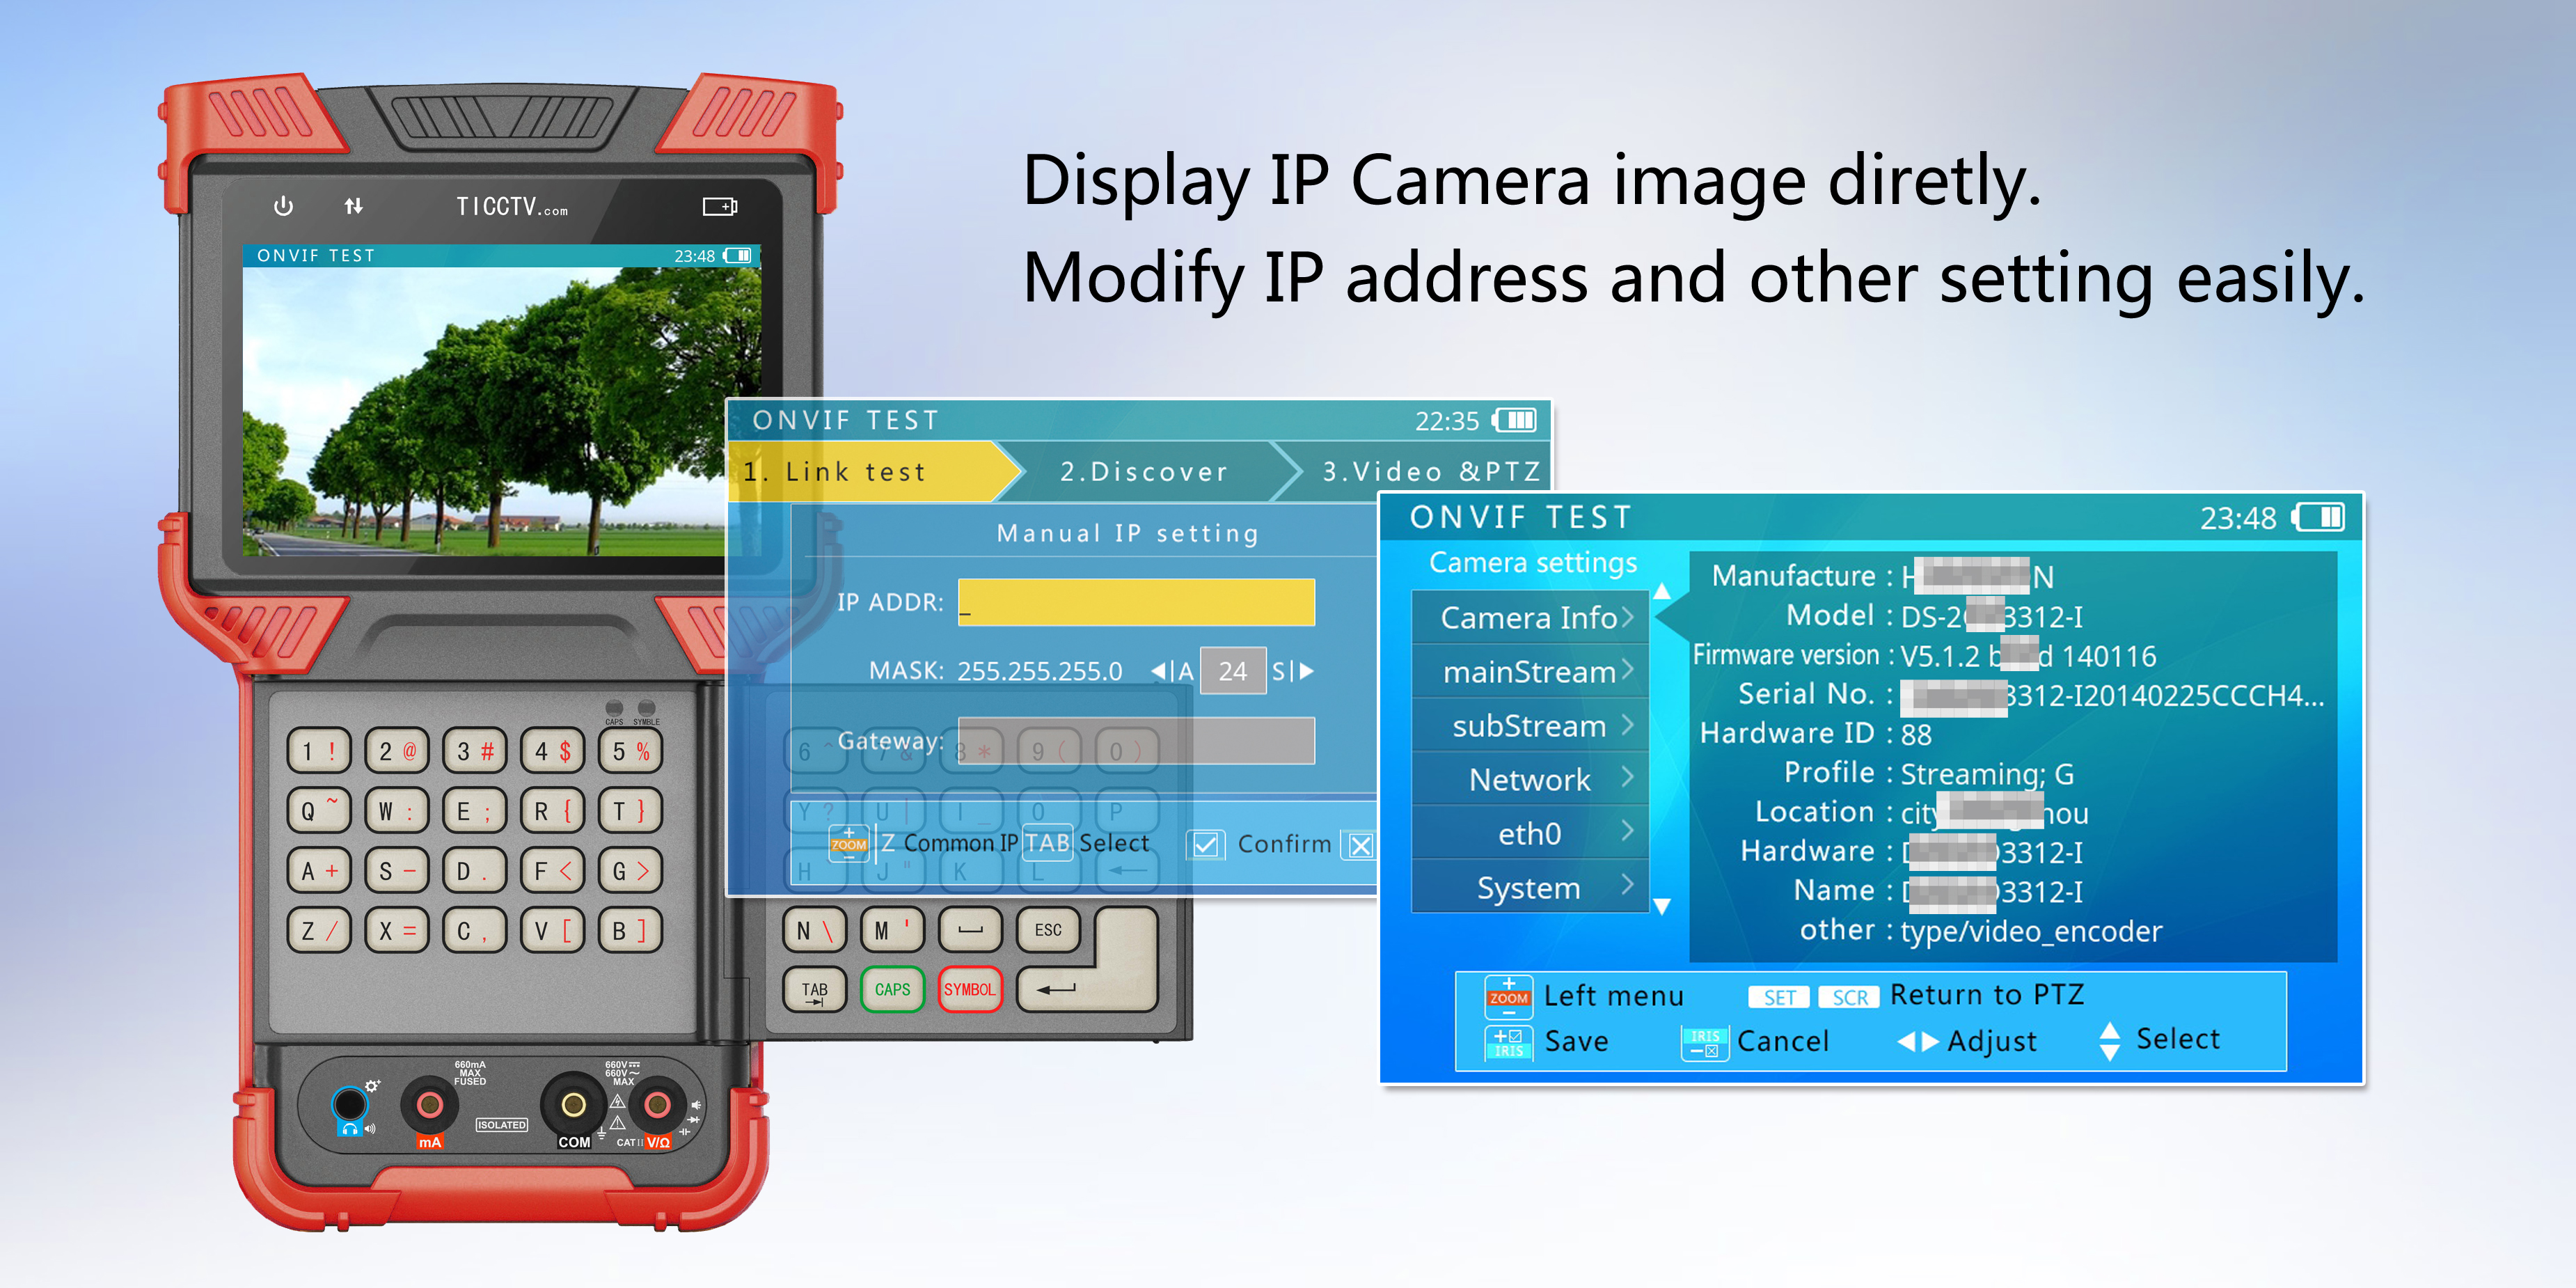 display IP images